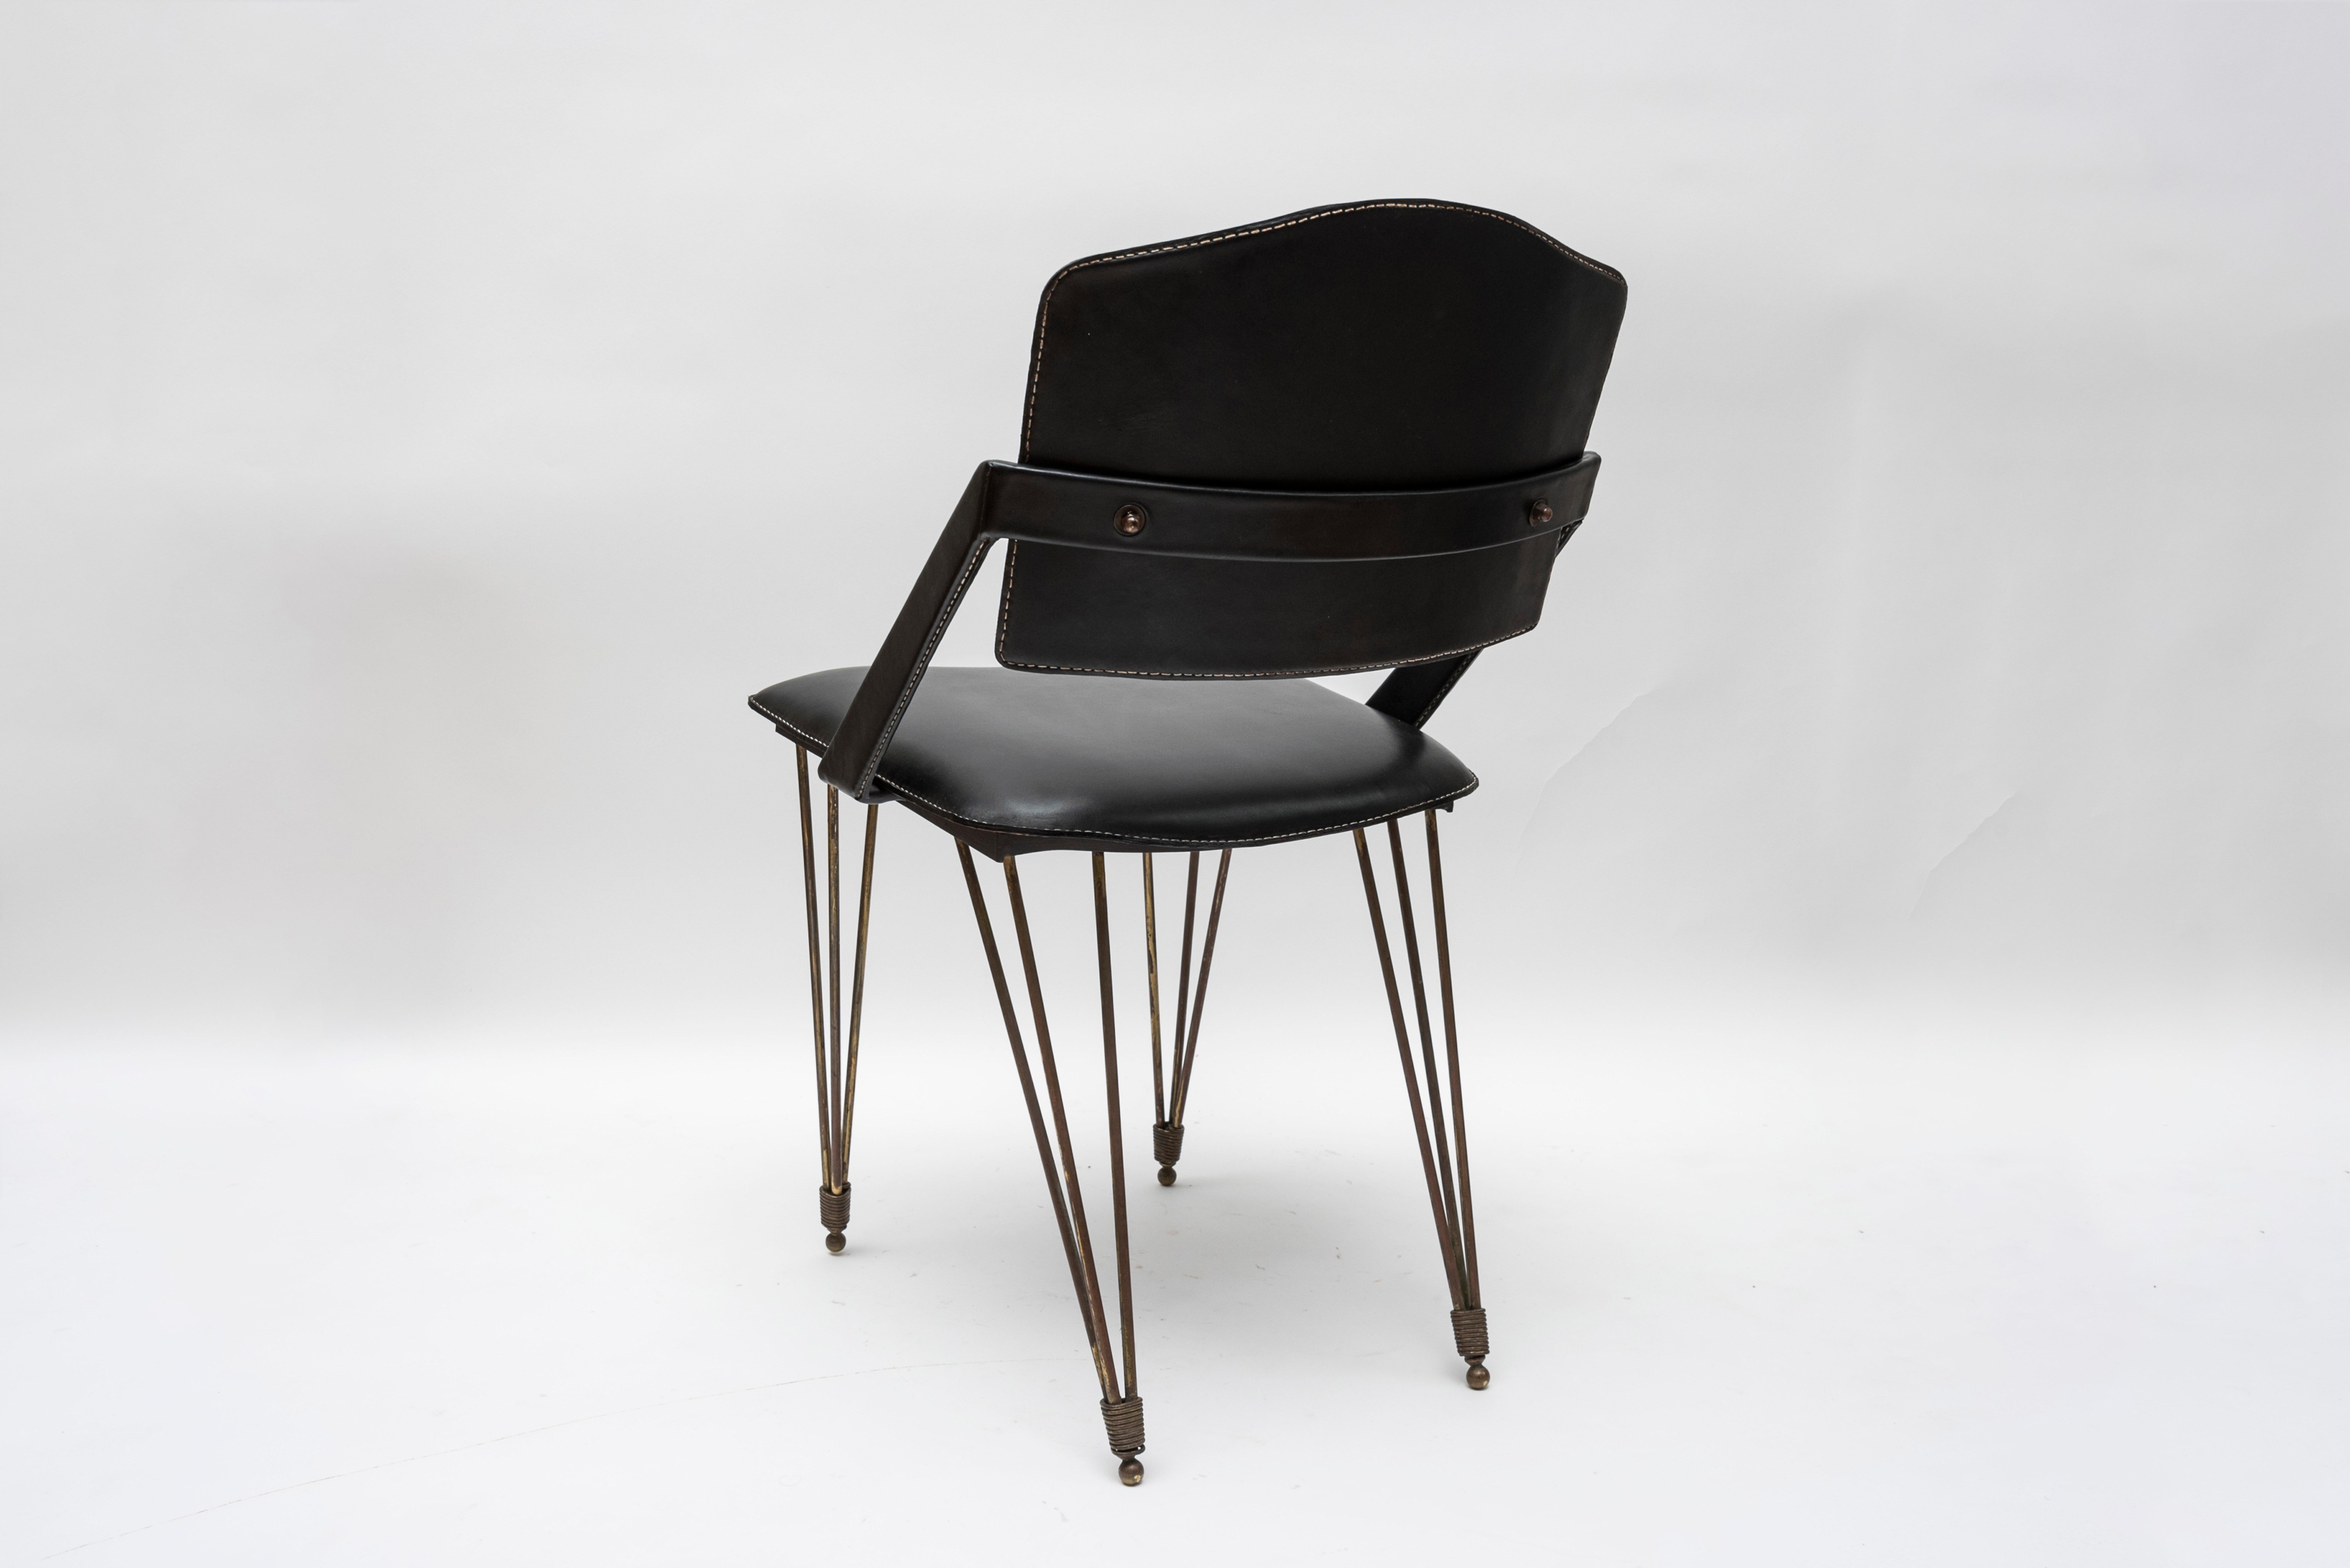 Paire de fauteuils en cuir surpiqué de Jacques Adnet
D'un ensemble de 6, les autres paires sont de couleur bordeaux et marron clair,
1950s,
France.